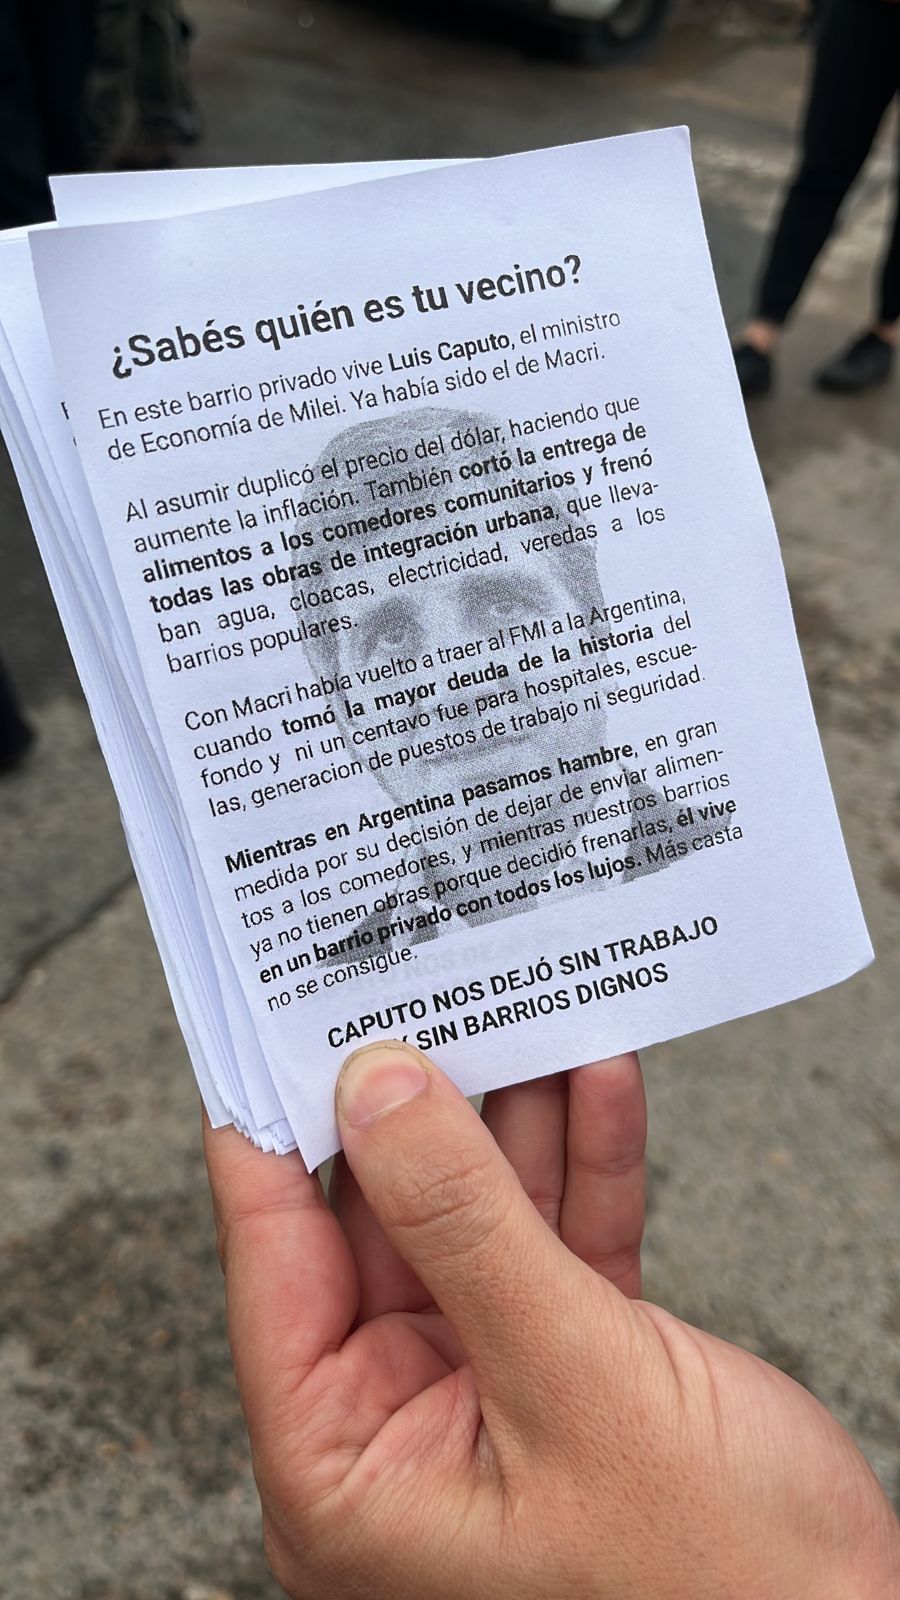 Despedidos y trabajadores de la economía popular fueron a protestar al portón del barrio privado donde vive Luis Caputo: "¿Sabés quién es tu vecino?"